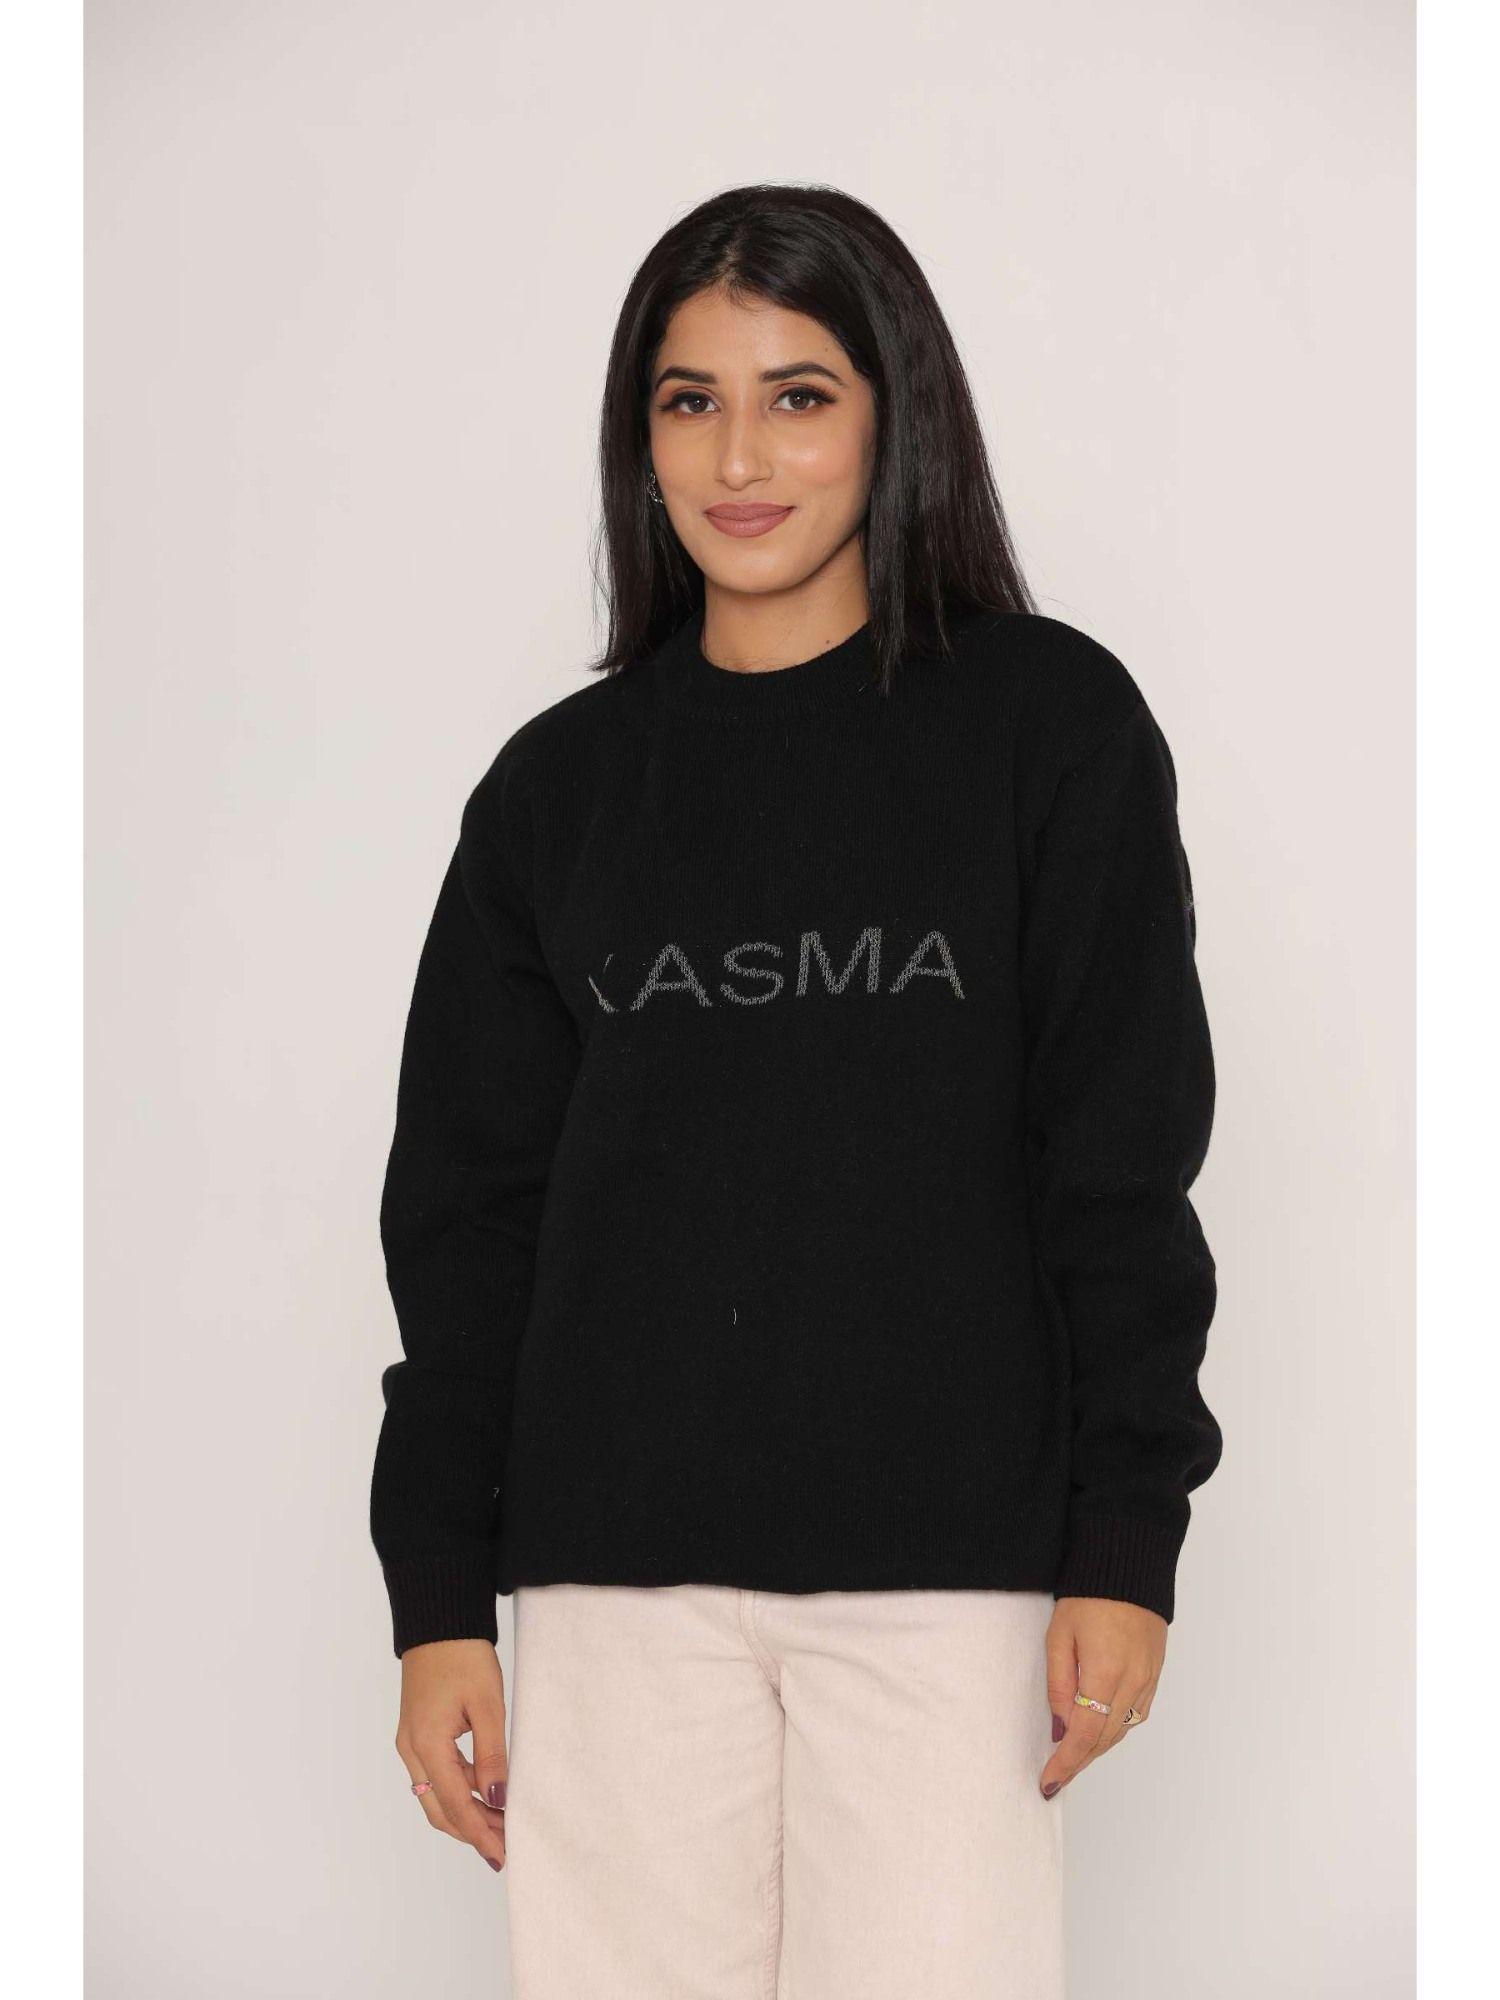 stylish oversized drop shoulders black woollen sweaters for women